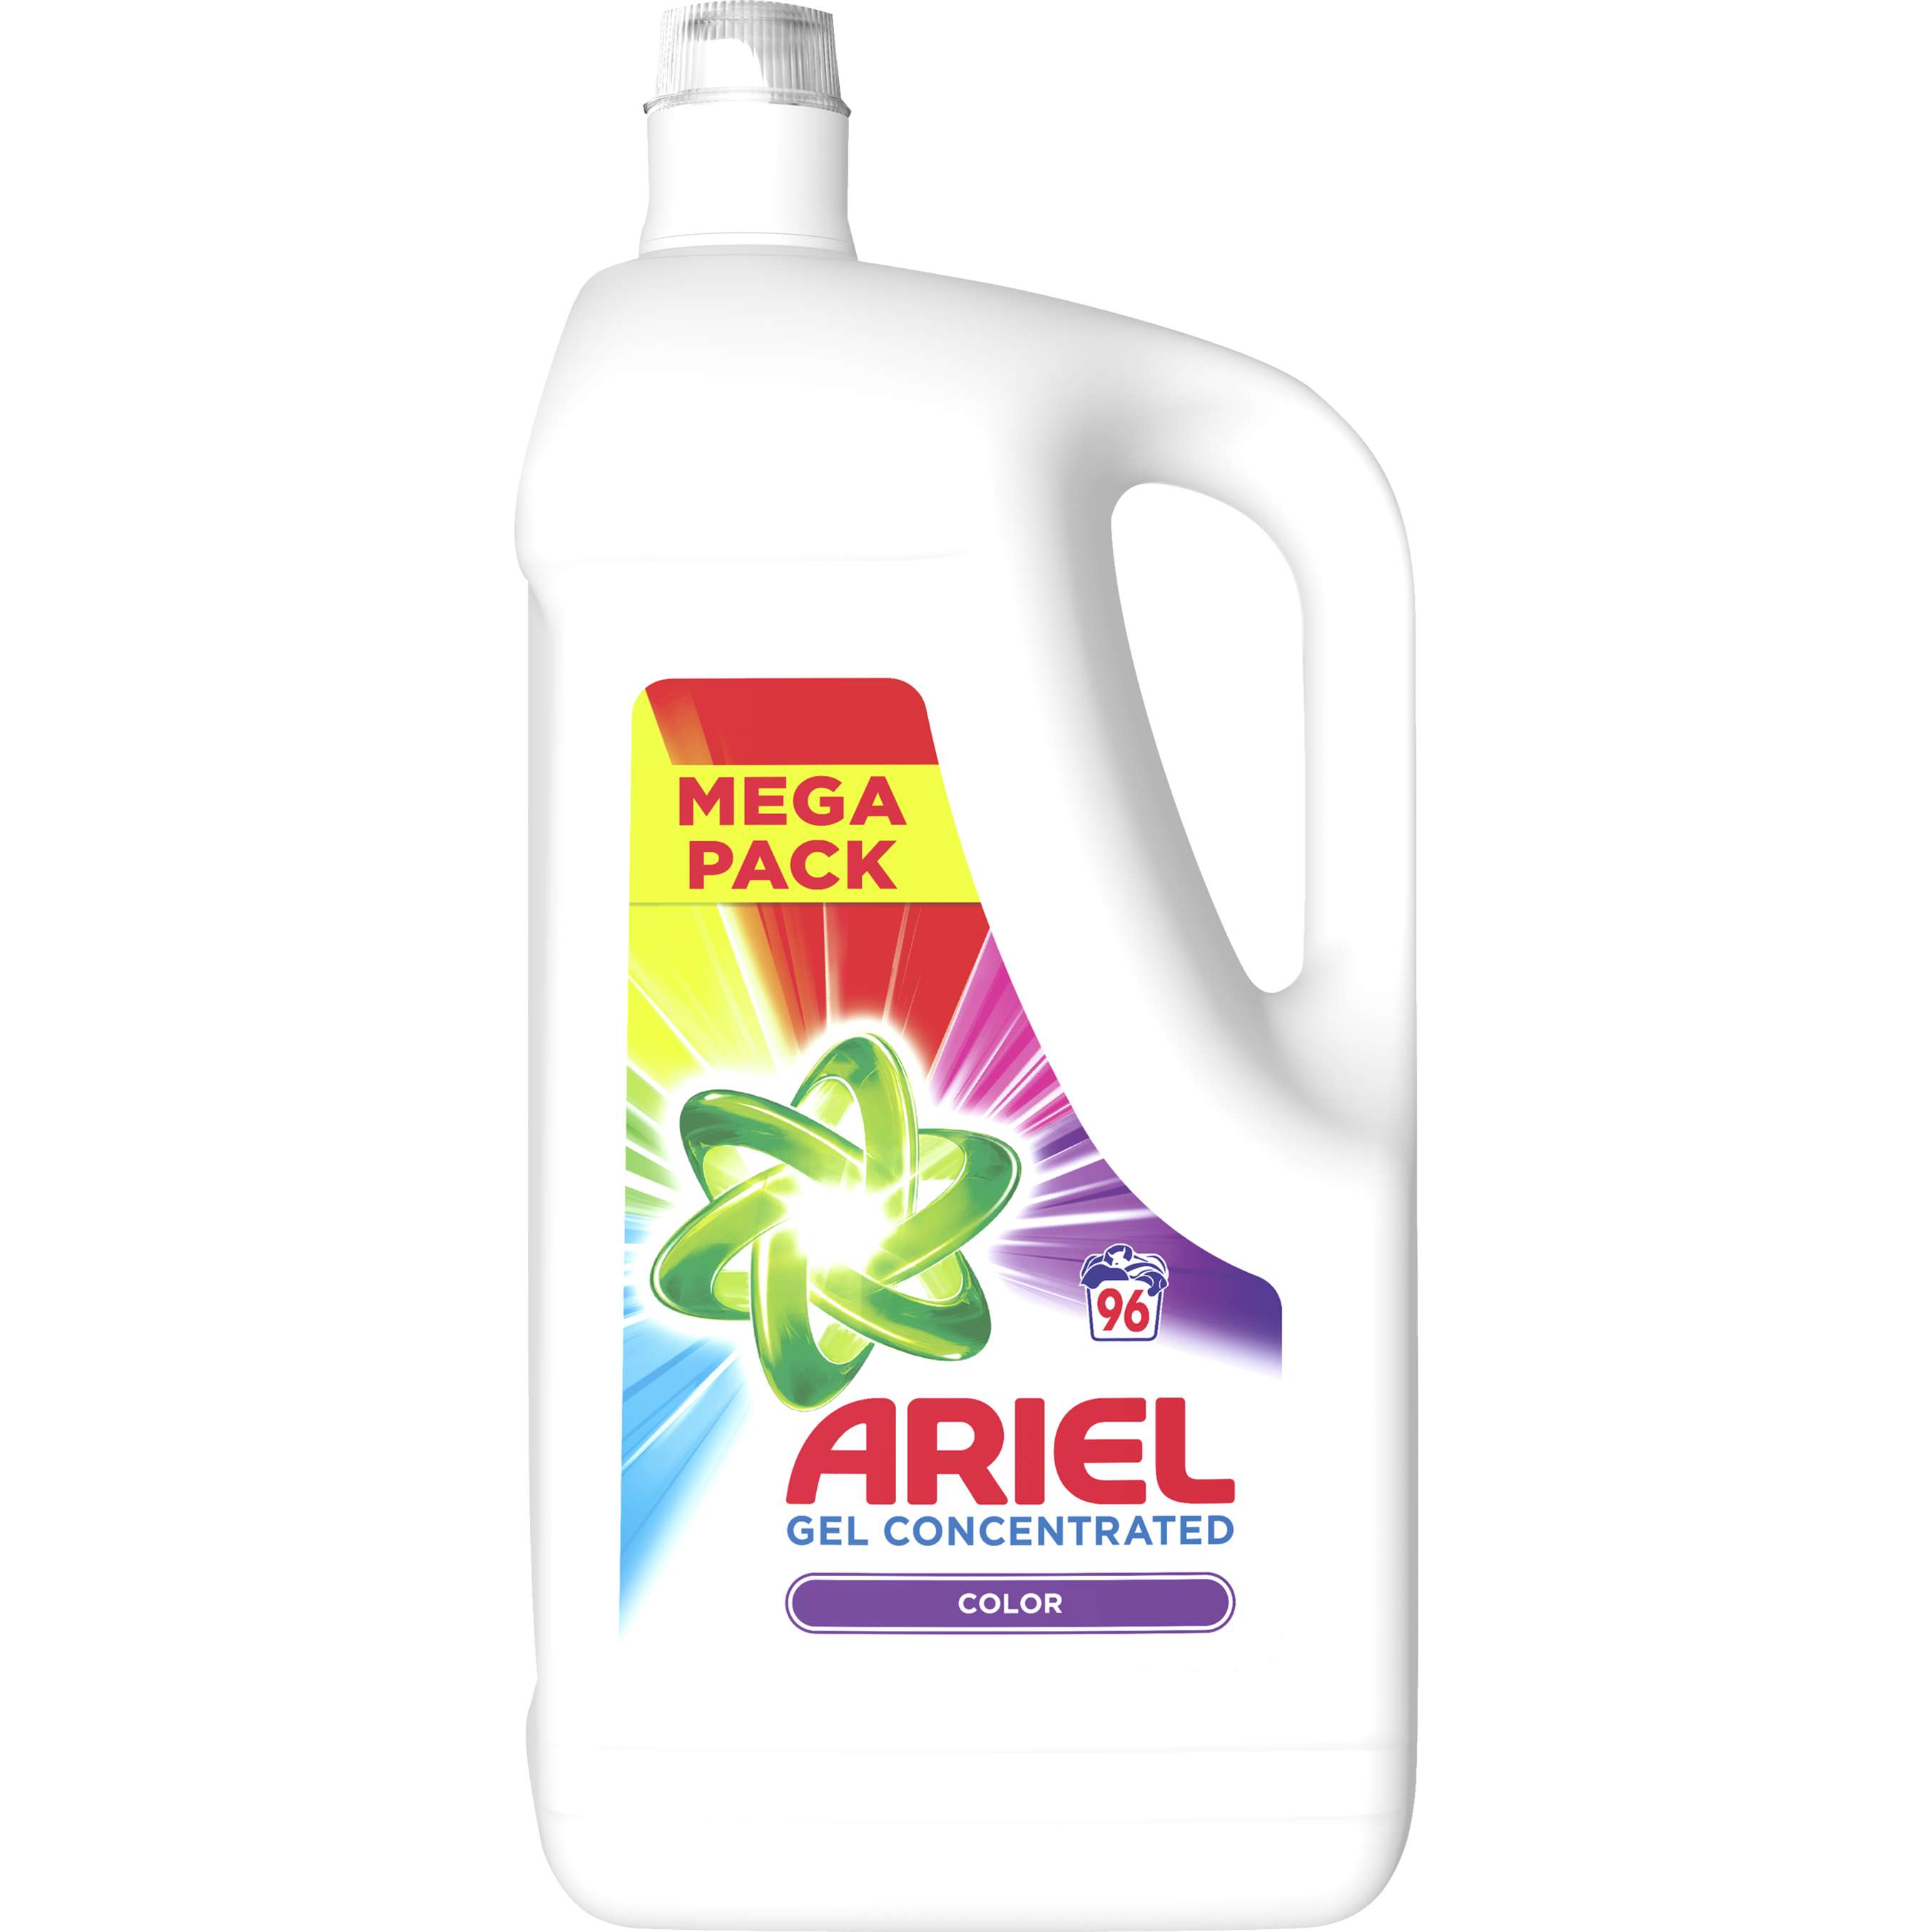 Zobrazit nabídku Ariel Prací gel